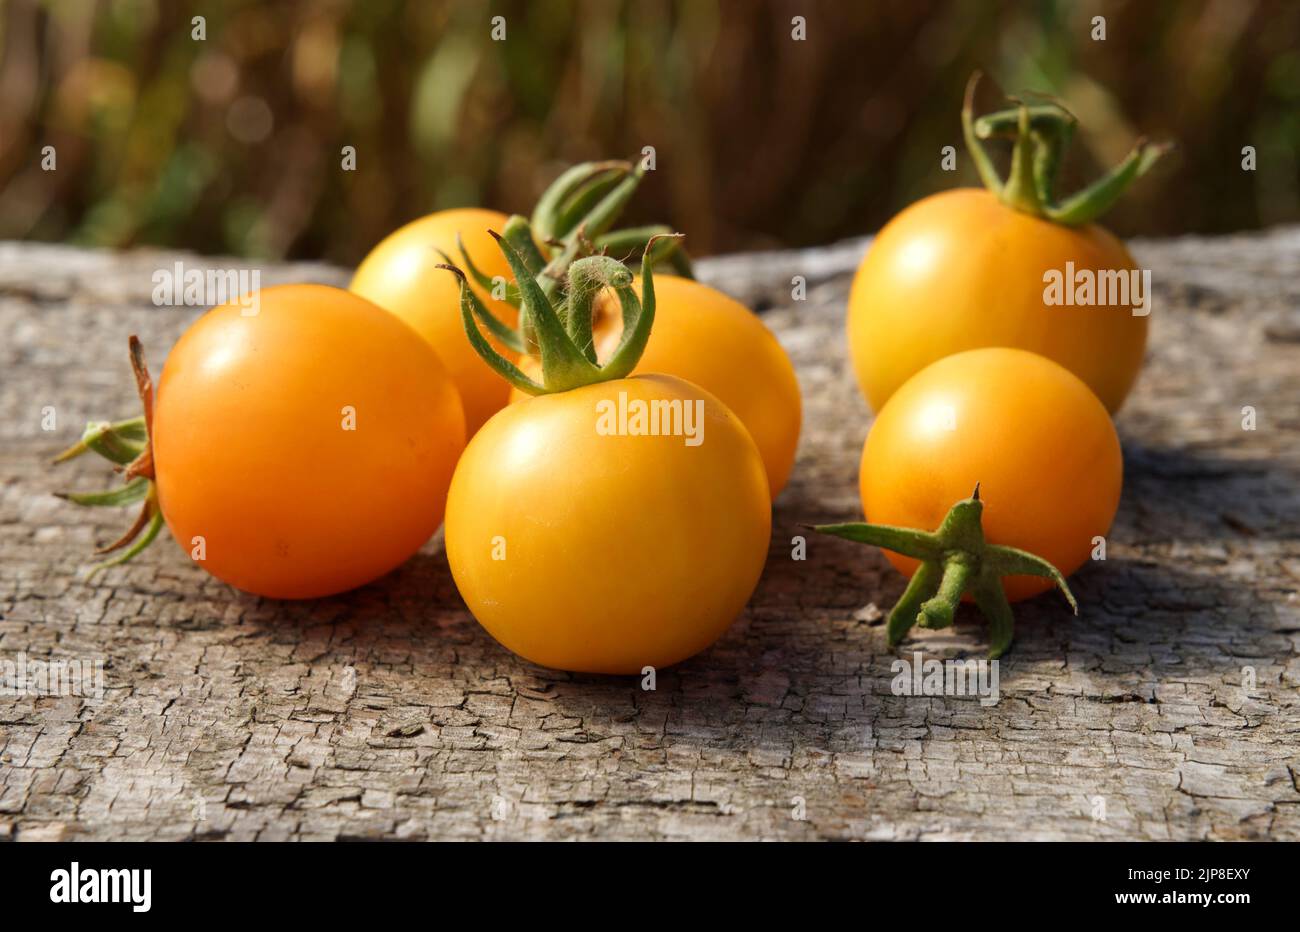 Vegetable garden tomatoes, variety : Lemon Boy (yellow round tomato). Stock Photo